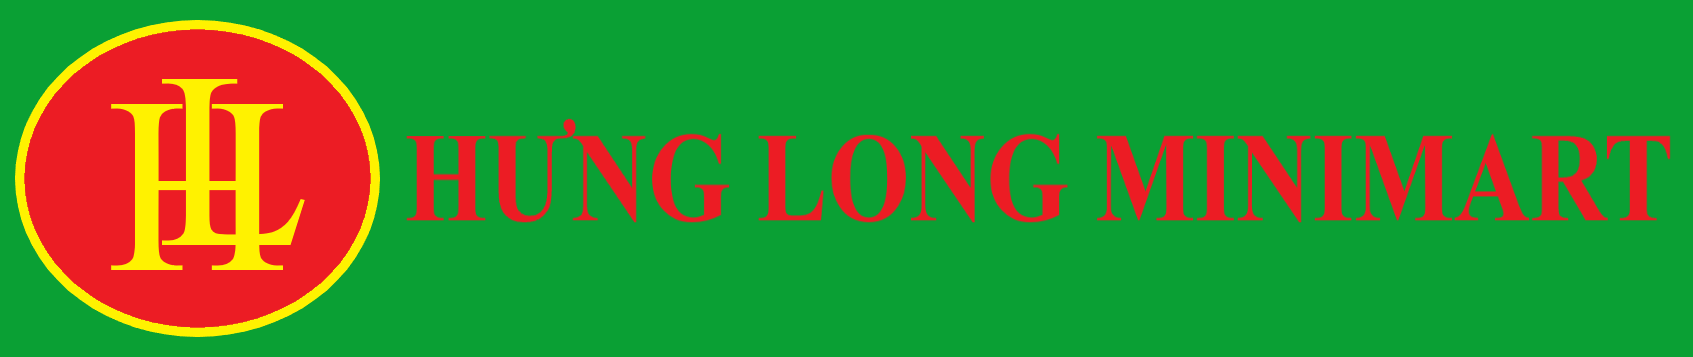 logo hunglongshop